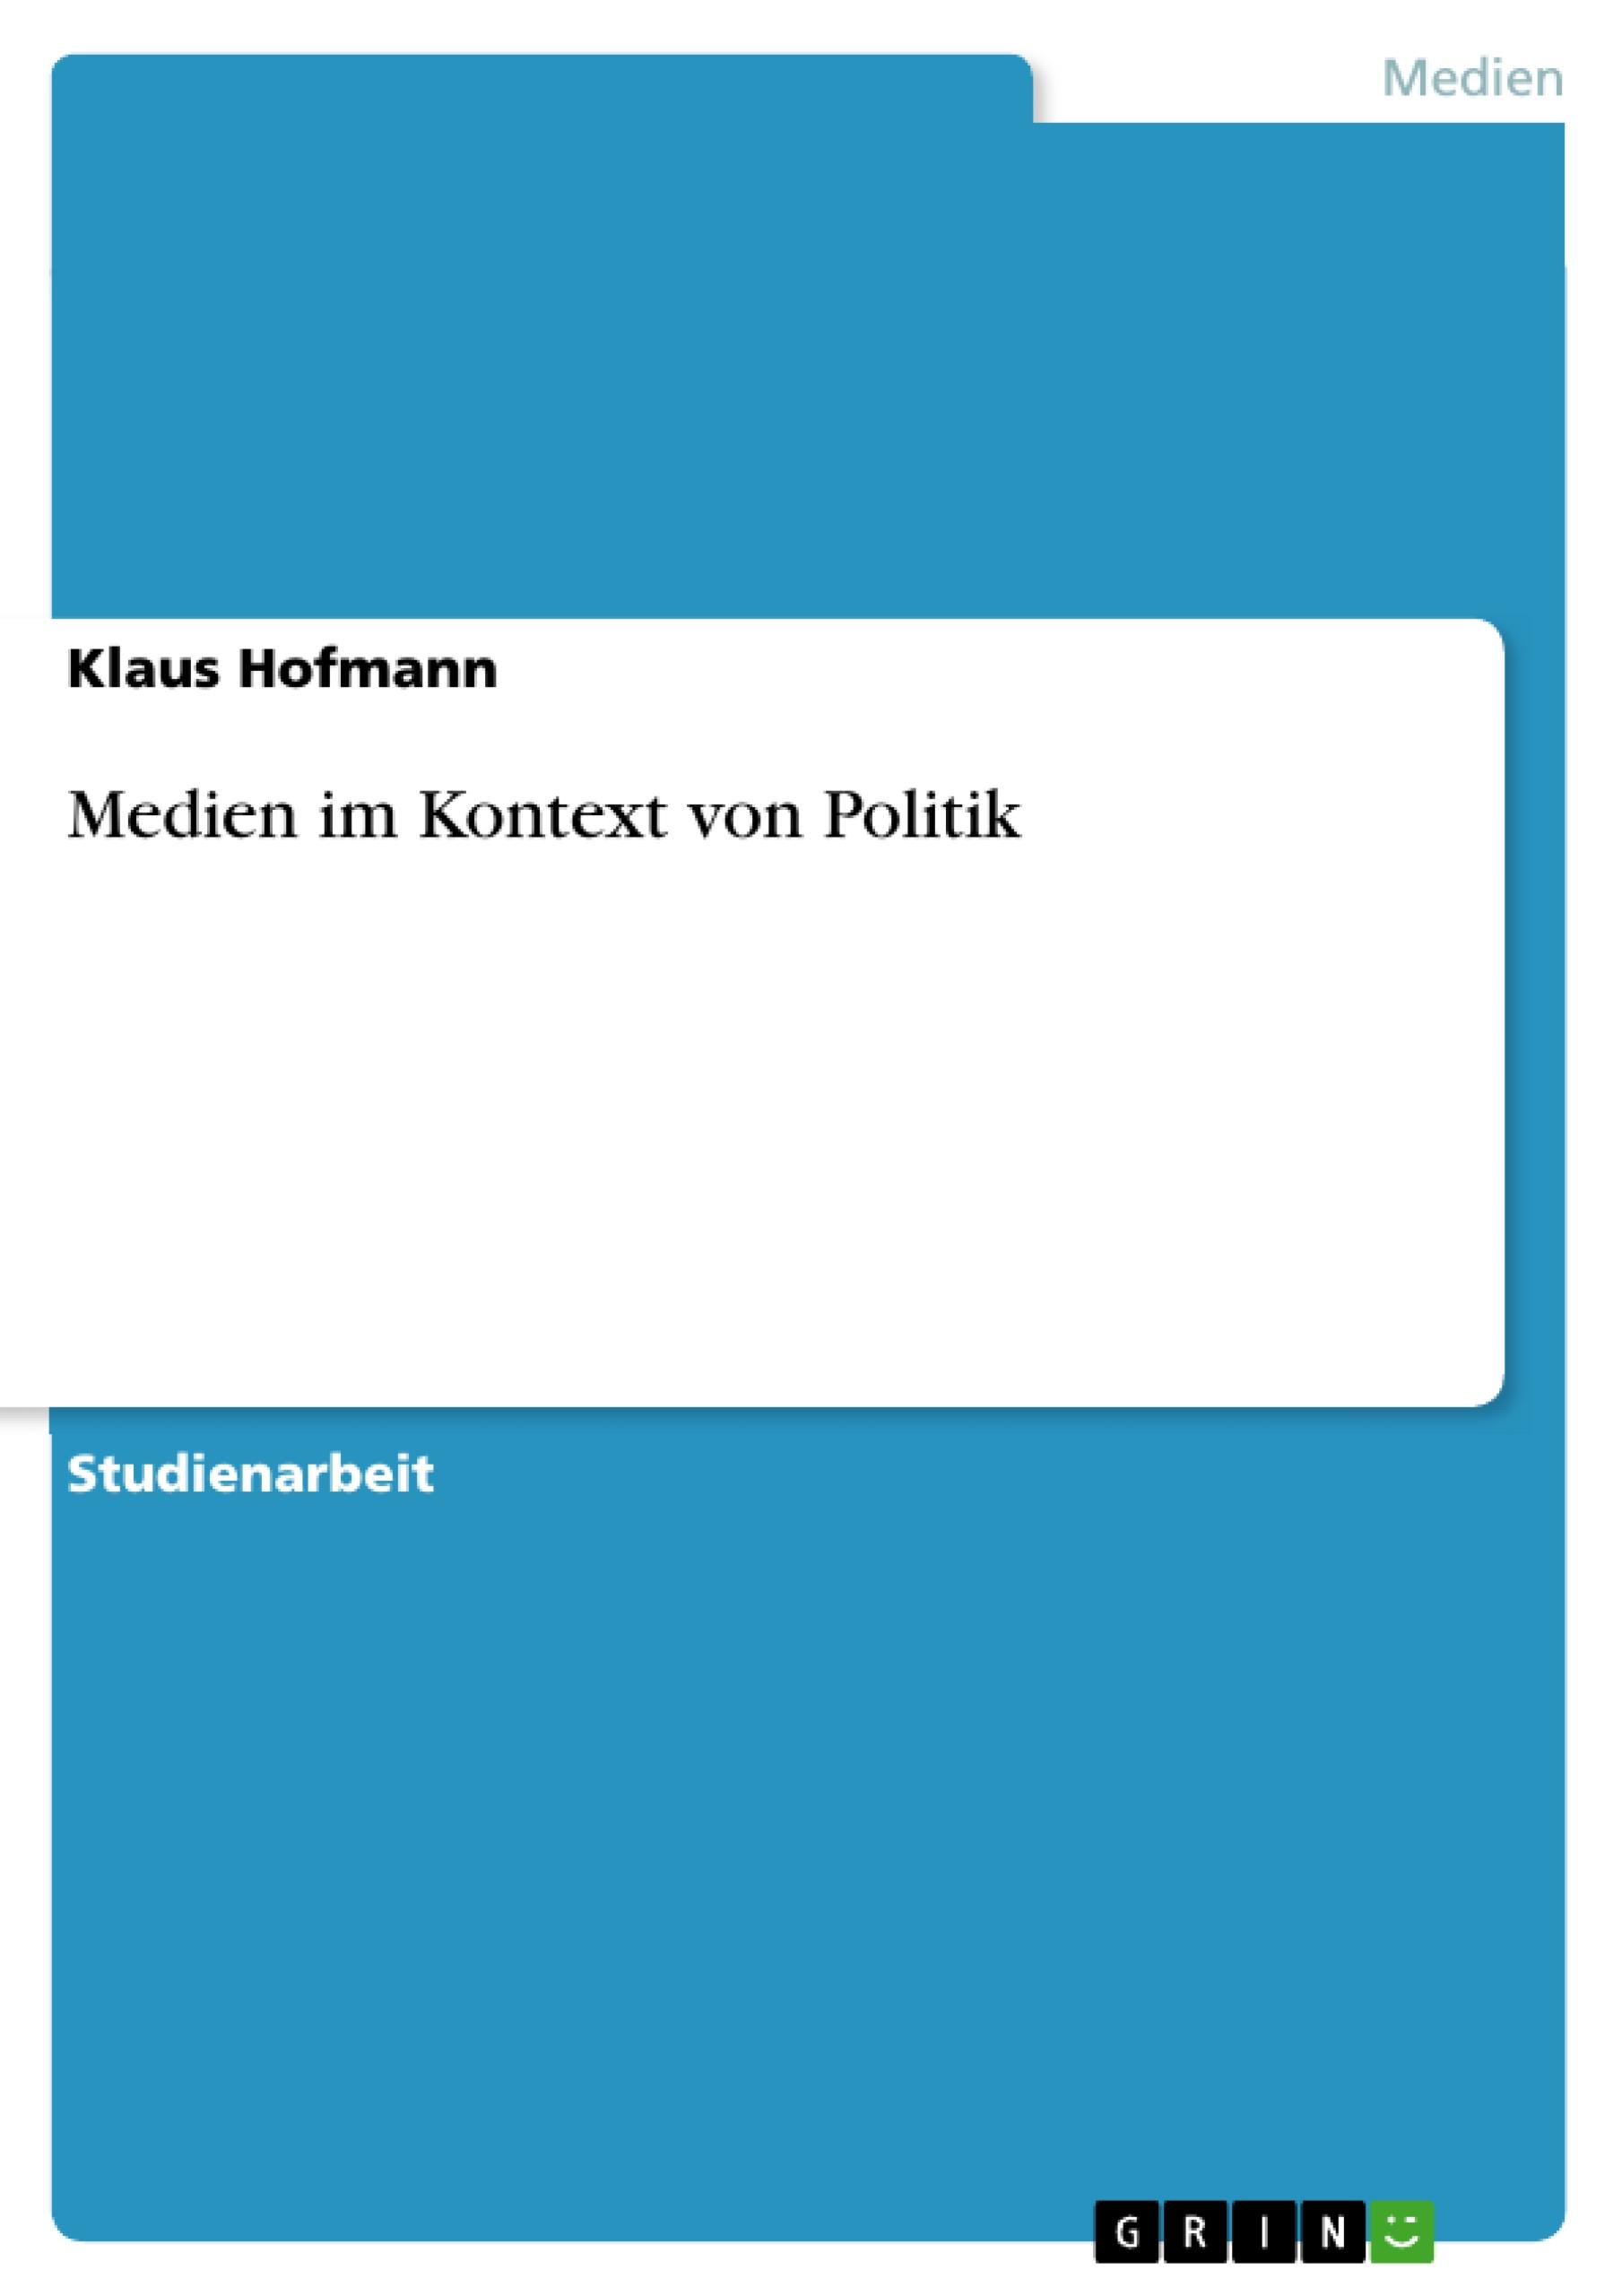 Medien im Kontext von Politik - Hofmann , Klaus